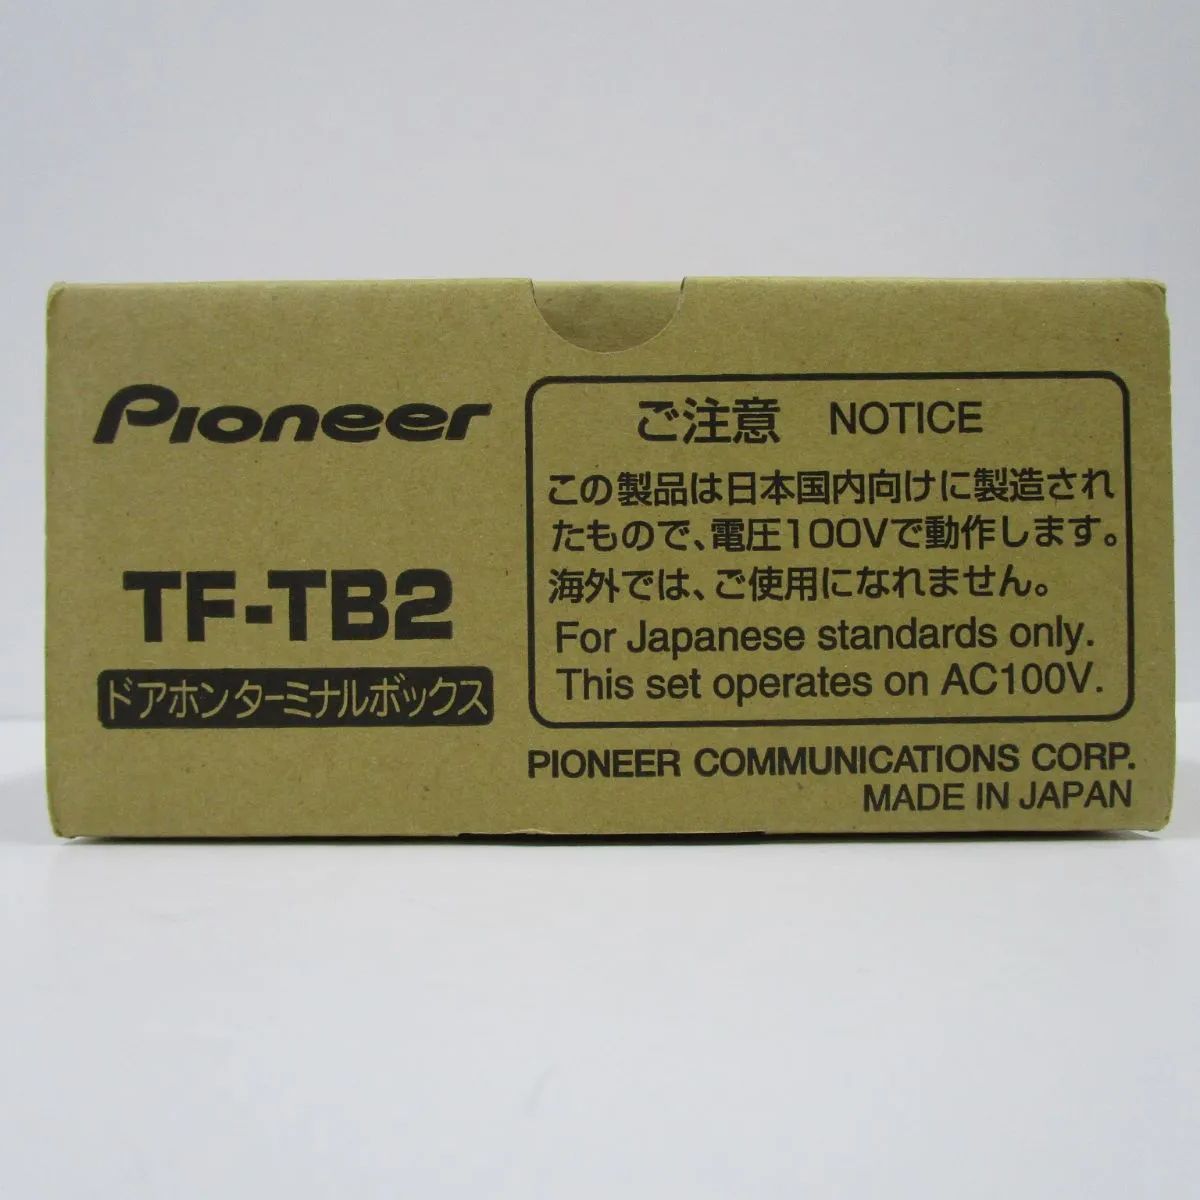 Pioneer ドアホンターミナルボックス TF-TB2 ライトグレー パイオニア ドアホン専用 ショックプライス メルカリ